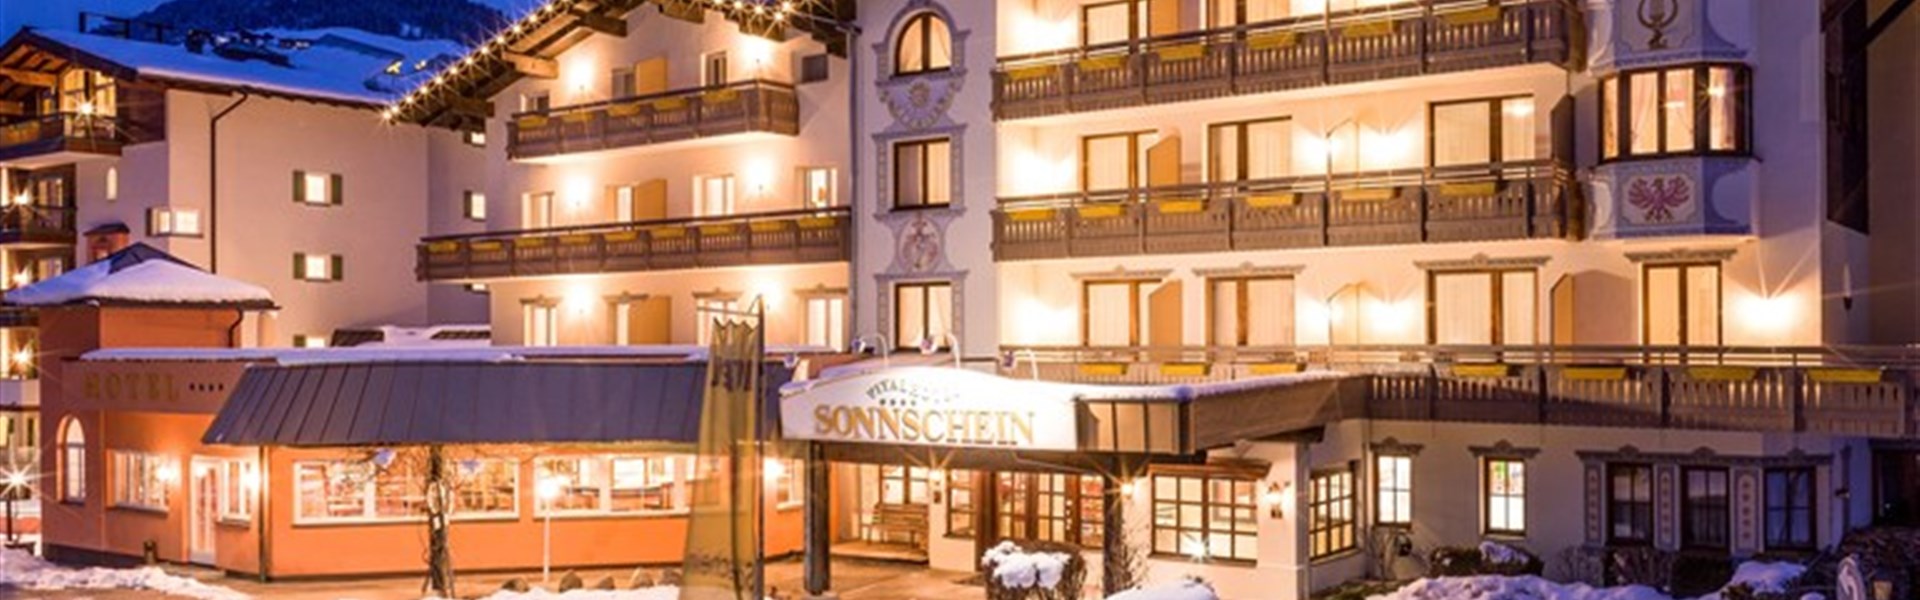 Harmony Hotel Sonnschein (W) - 